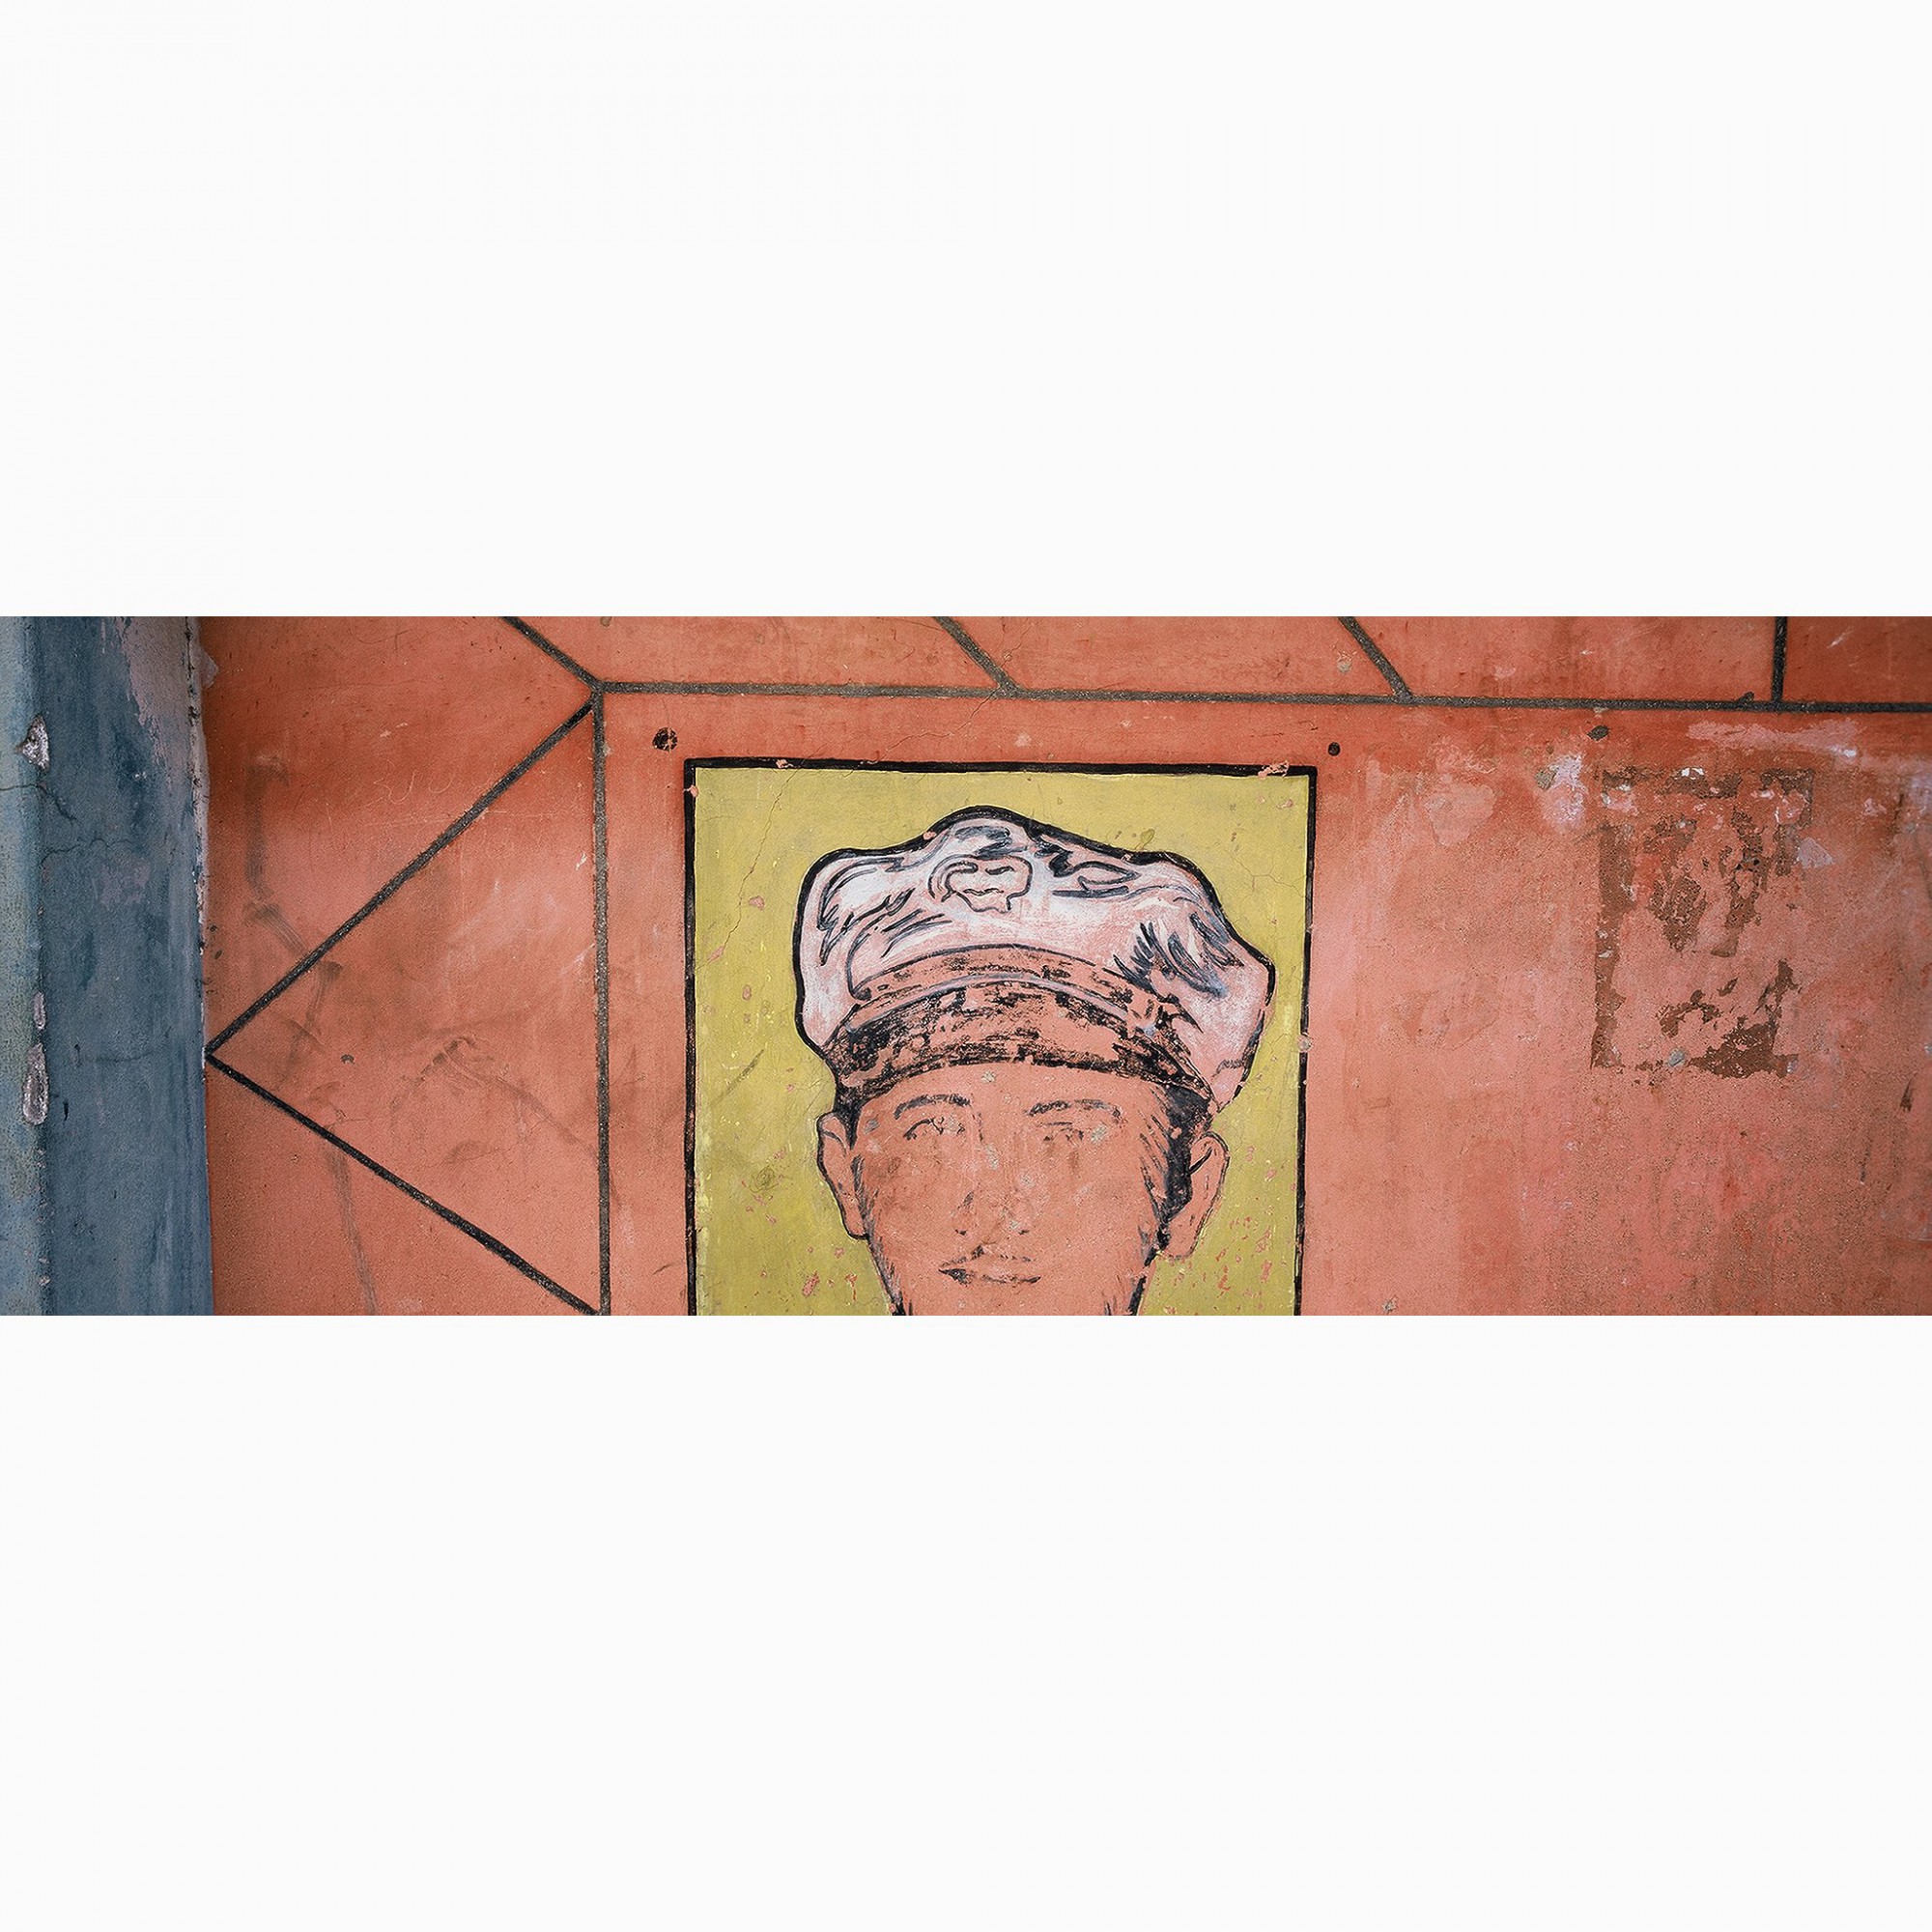 Afbeelding: Fotokunst Dominique Van Huffel, uit de reeks: Muren van geschiedenis. Panoramische opname. Cuba.